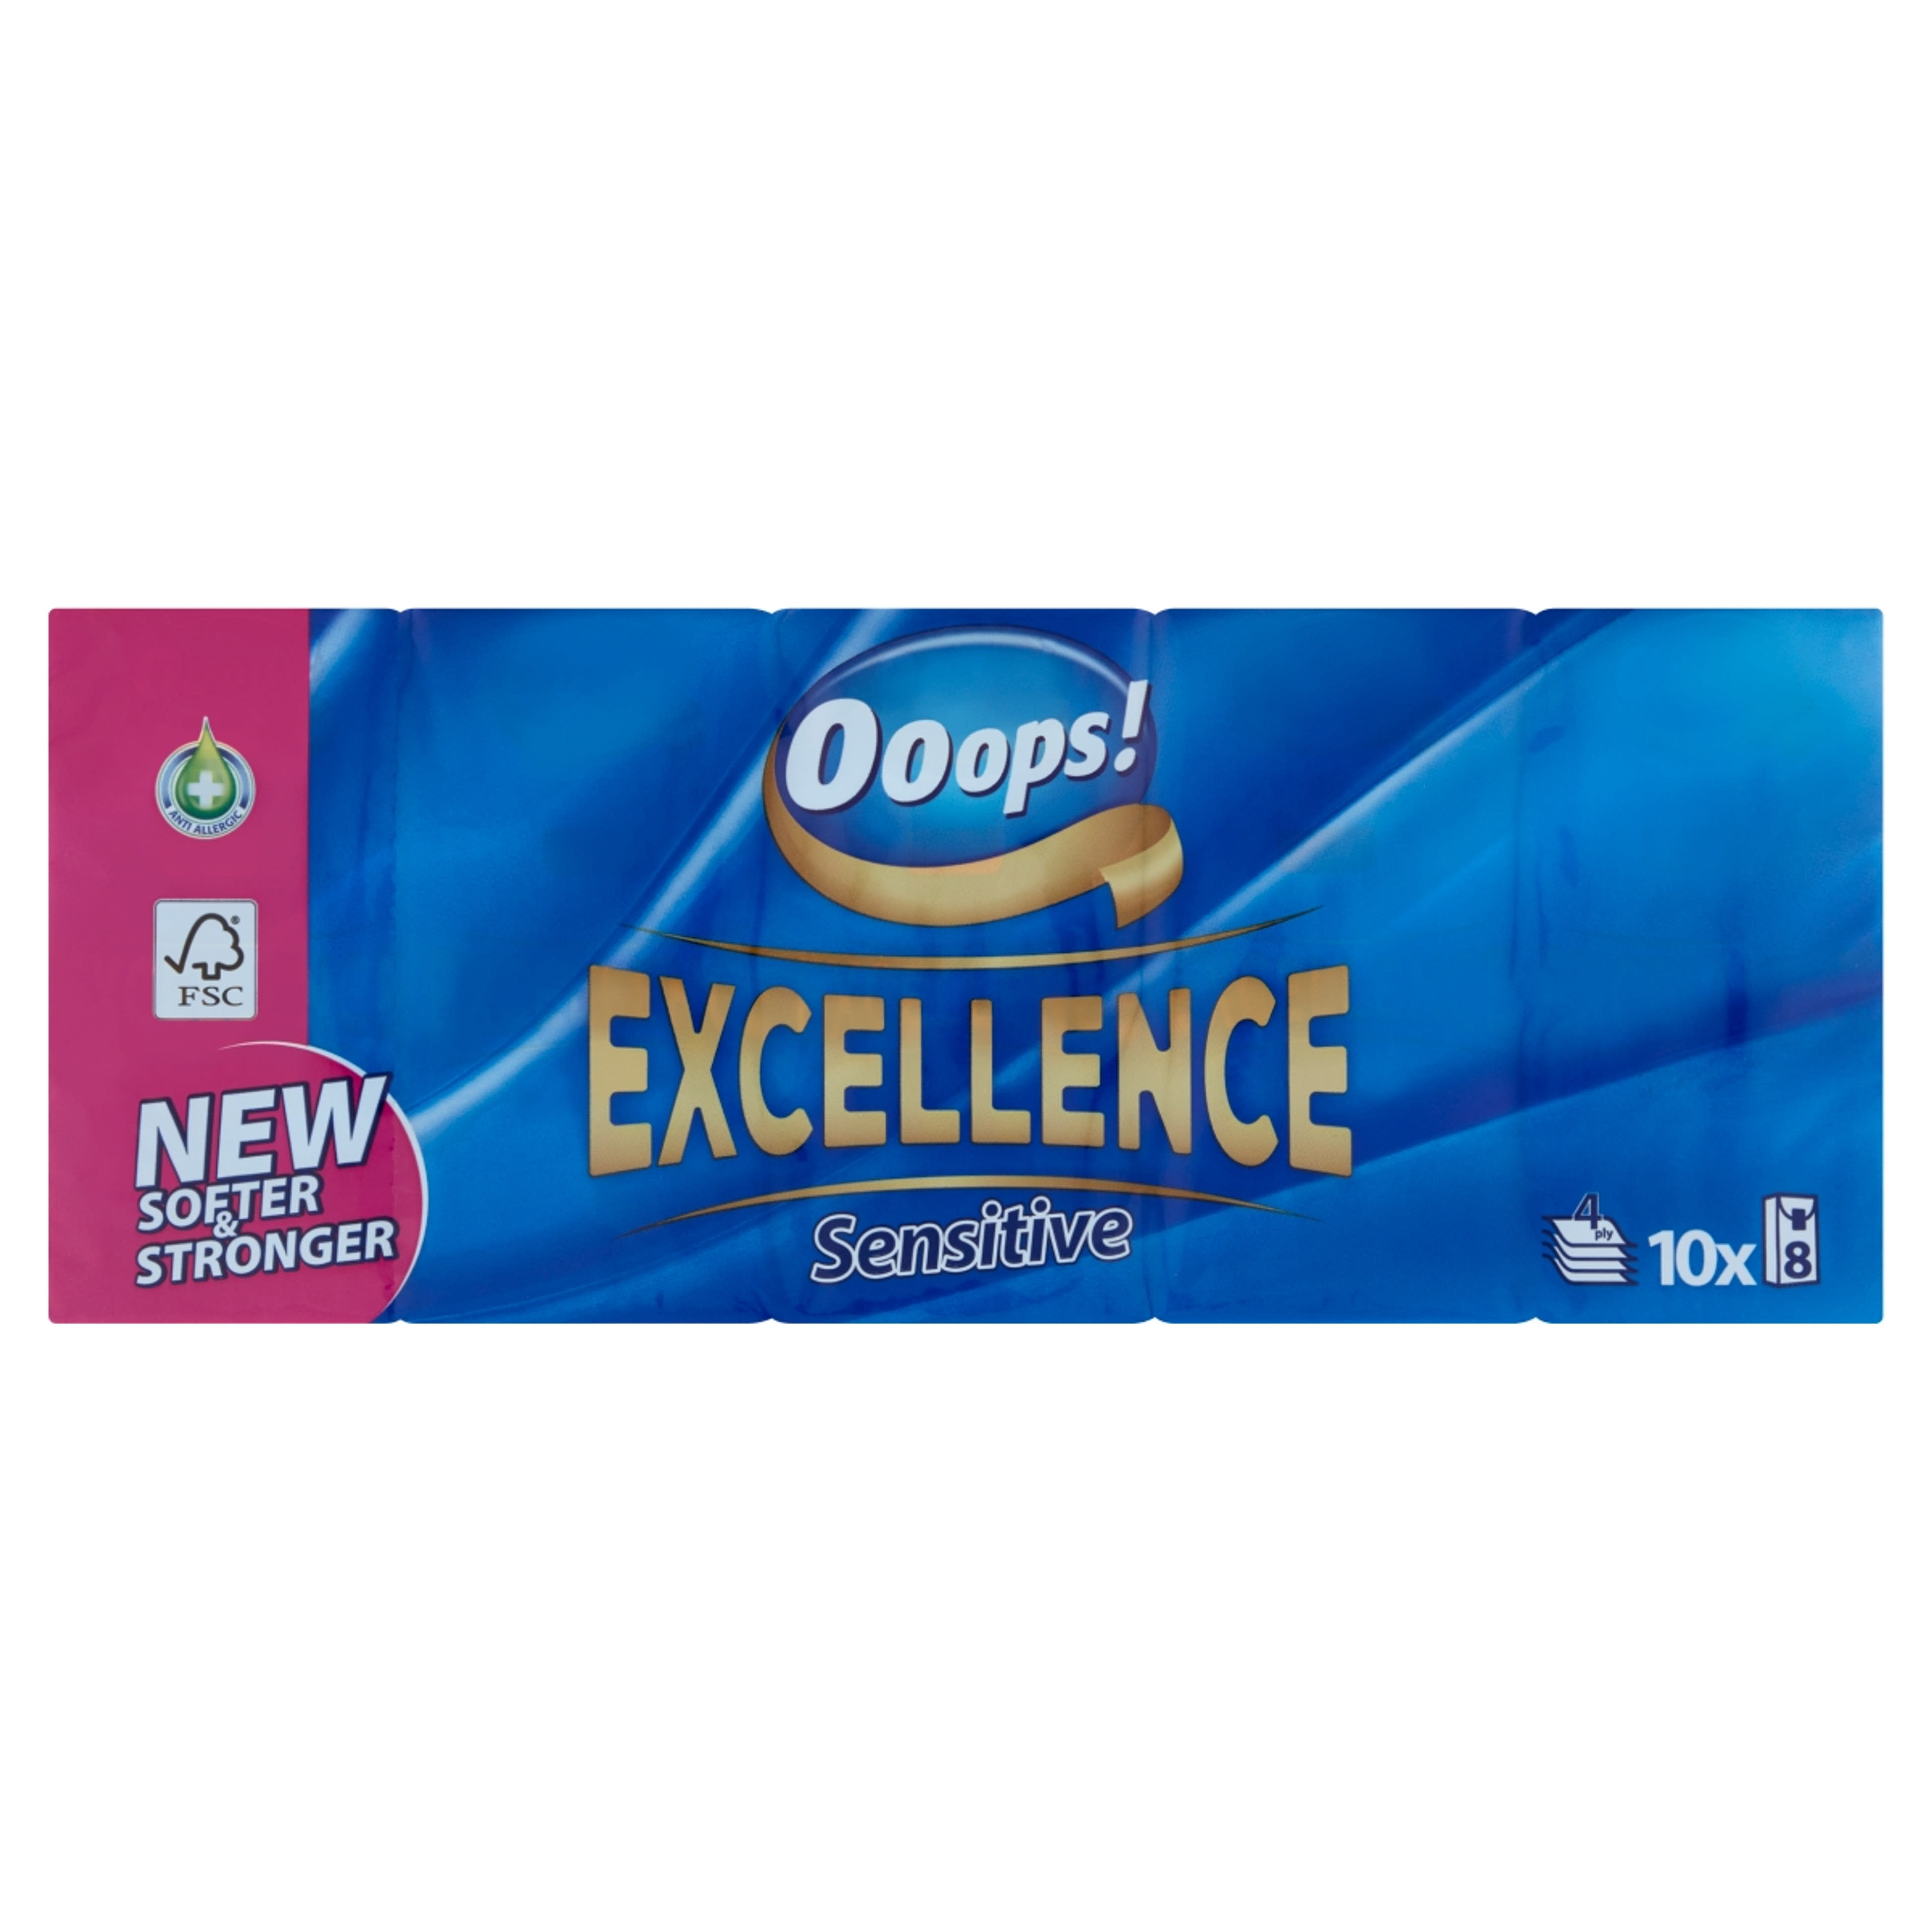 Ooops! Excellence Sensitive papír zsebkendő 4 rétegű 10x8 db - 80 db